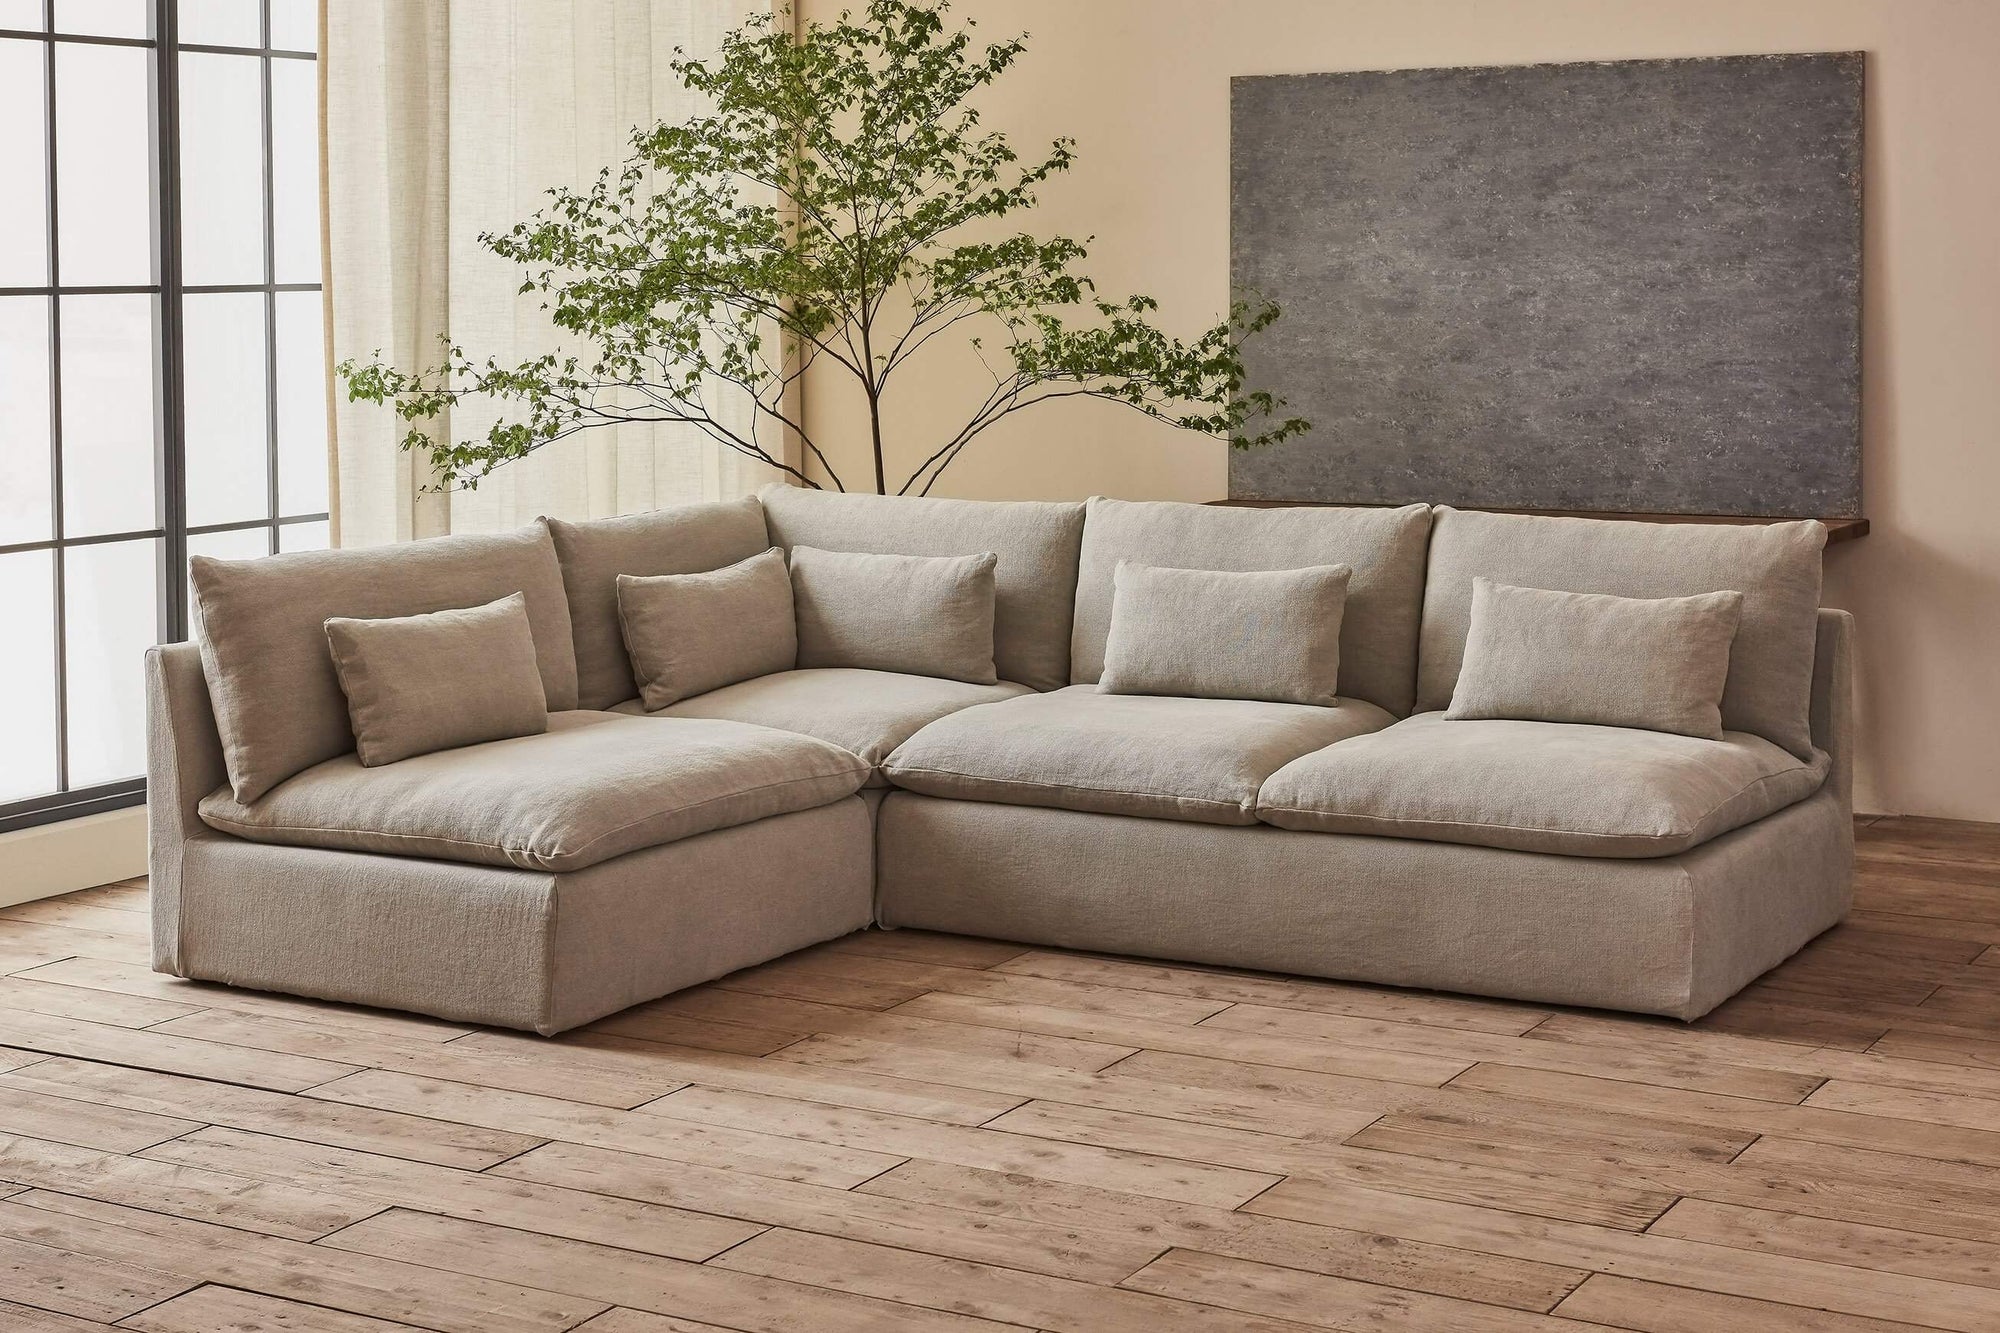 CHITA®️ Kenna Modular 4-Piece Sofa-Chaise Sectional (131